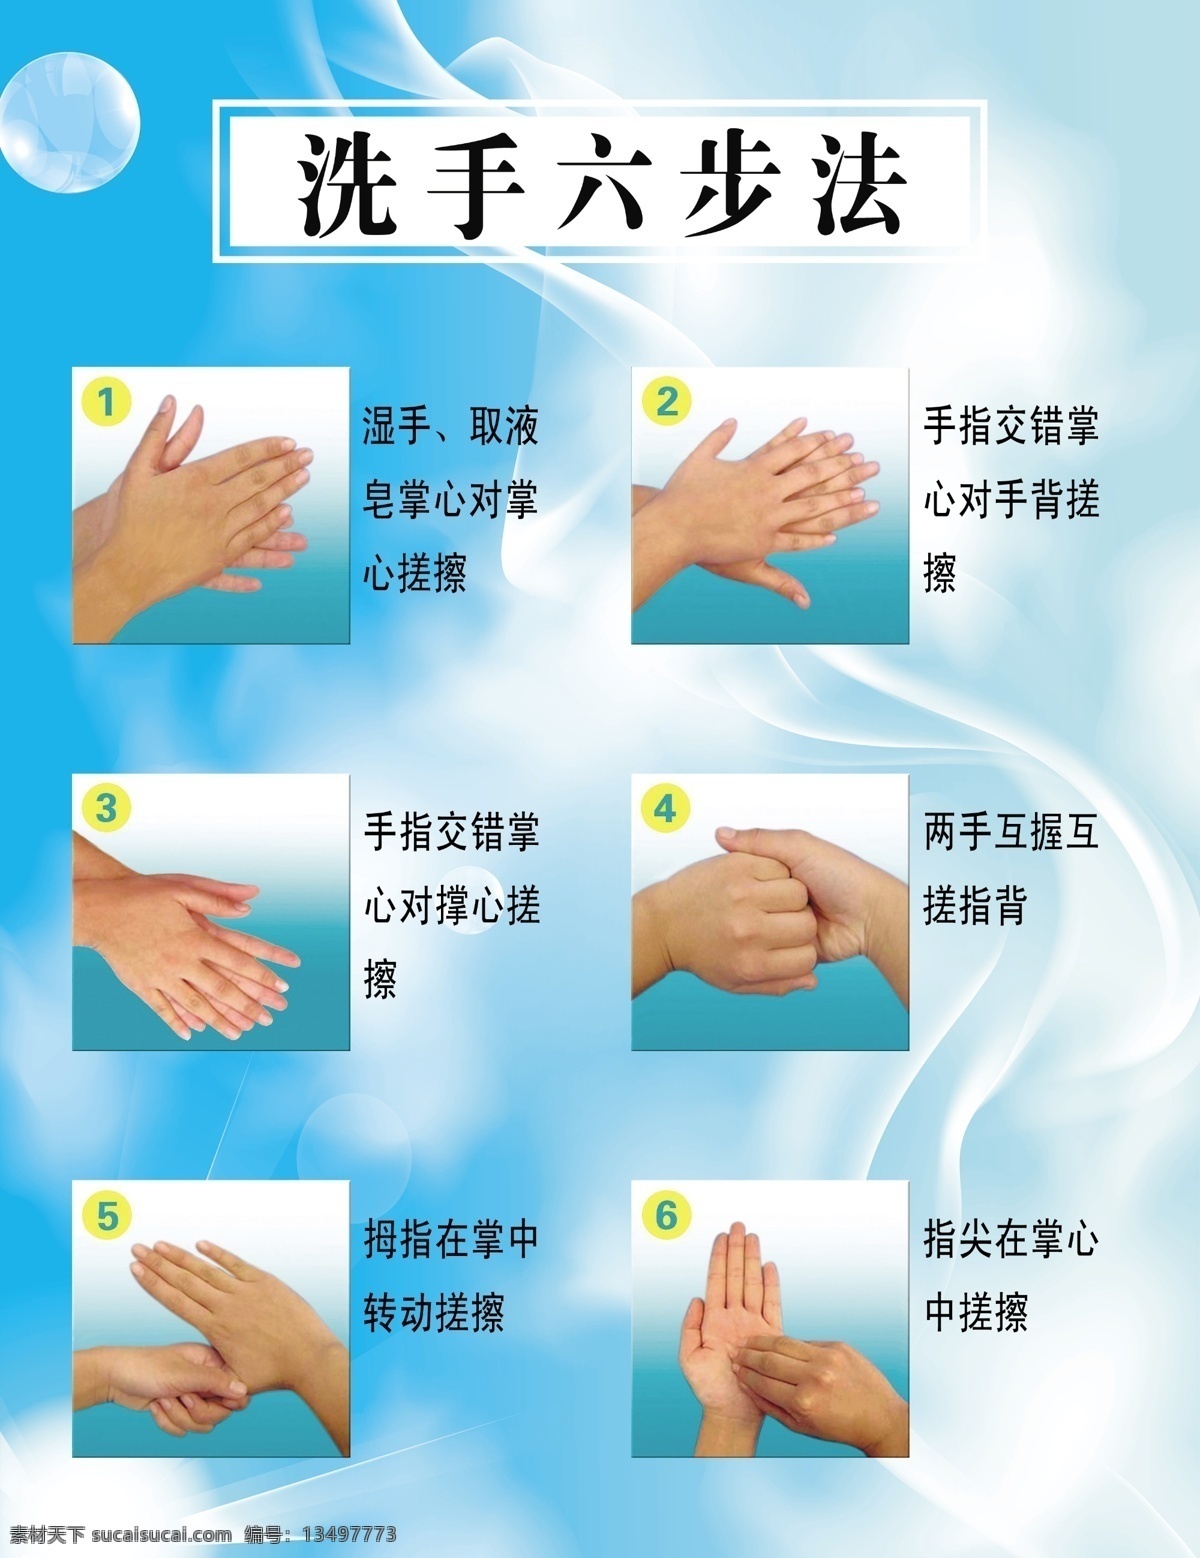 洗手六步法 洗手步骤 健康洗手 洗手常识 洗手图片 展板模板 广告设计模板 源文件